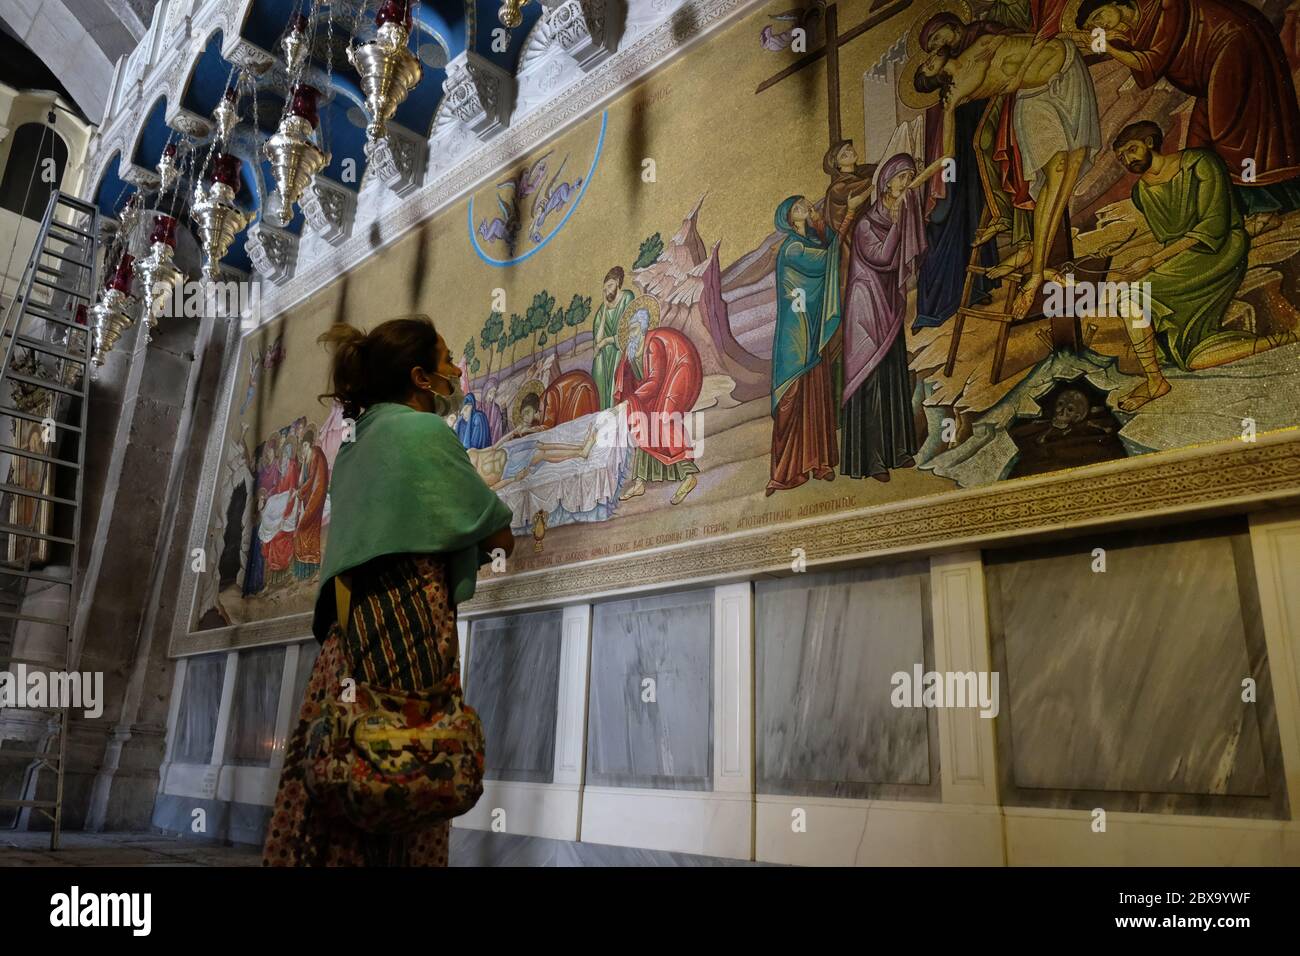 Un visiteur voit une mosaïque murale représentant le corps de Jésus Christ préparé après sa mort, face à la Pierre d'onction à l'intérieur de l'Église du Saint-Sépulcre dans la vieille ville chrétienne Jérusalem-est Israël Banque D'Images